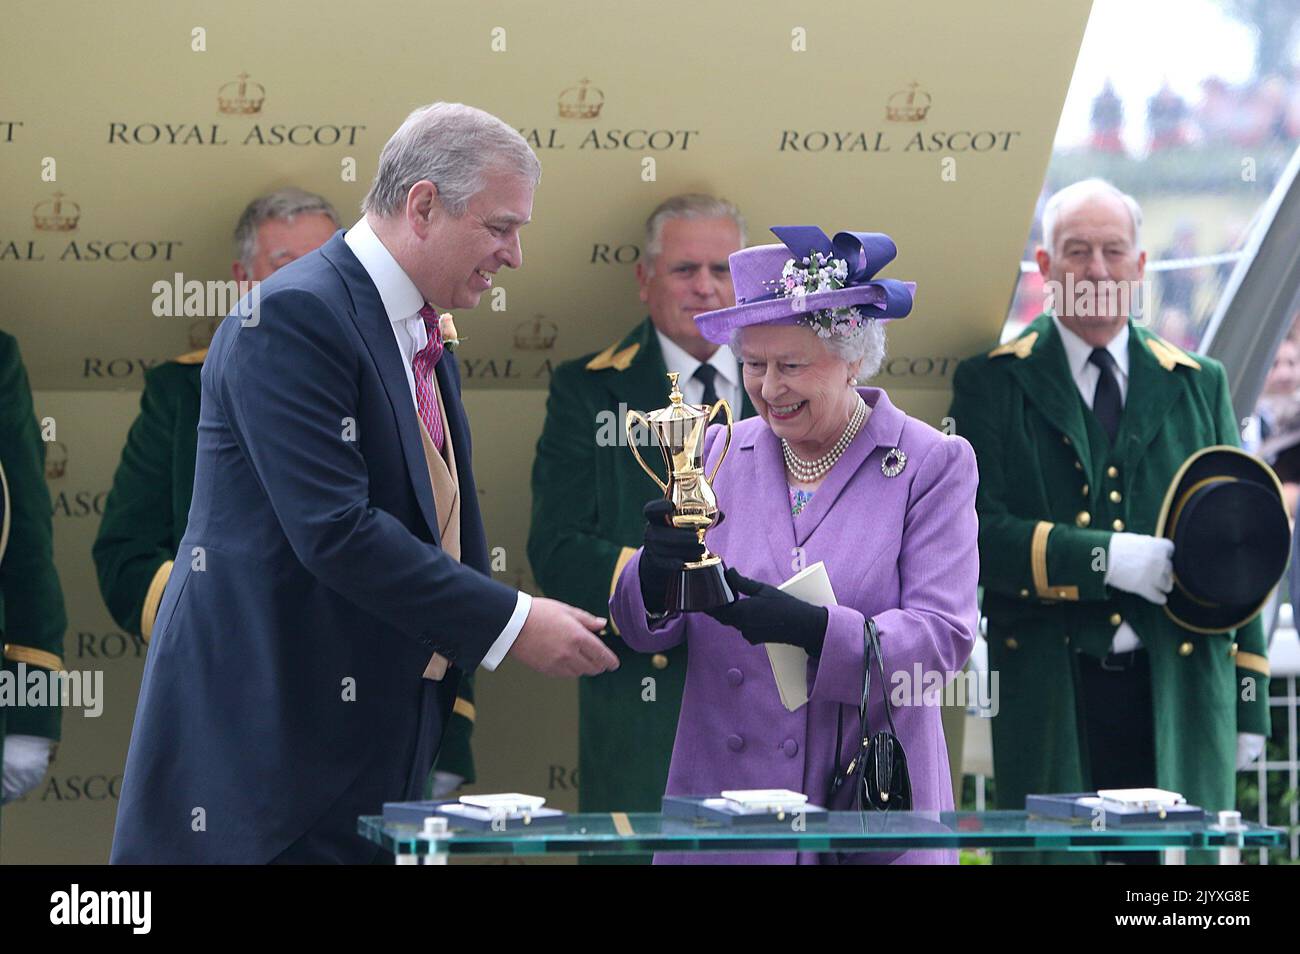 Foto de archivo de fecha 20/6/2013 del Duque de York presentando a la Reina Isabel II con un trofeo después de que su estimación de caballo ganó la Copa de Oro durante el Día de las Damas en los caballos Royal Ascot, como los perros, eran el amor de toda la vida de la Reina y ella tenía un increíble conocimiento de la cría y linajes. Ya sea que se trataba de carreras de carreteros o ponis, ella mostró un interés infalible. Fecha de emisión: Jueves 8 de septiembre de 2022. Foto de stock